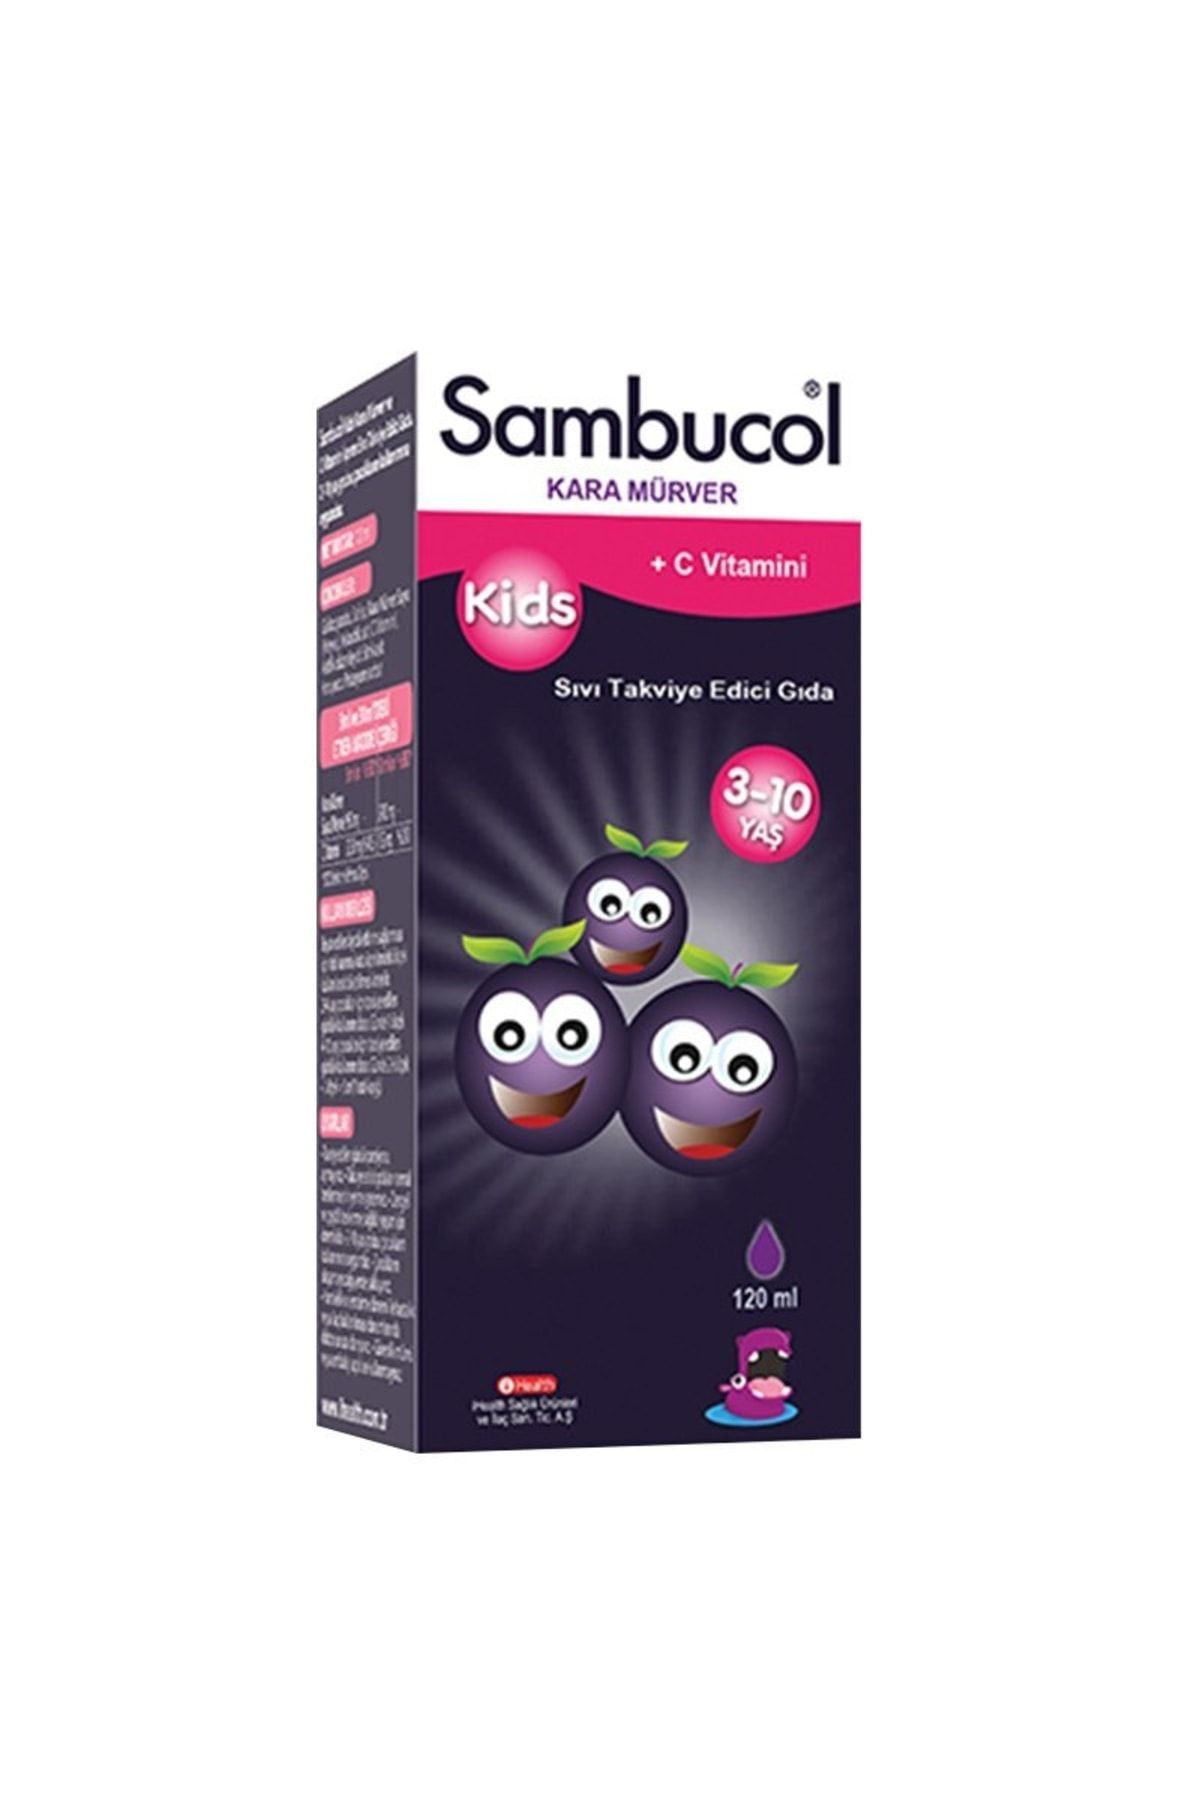 Sambucol Kids Kara Mürver C Vitamini Ve Çinko Içeren Takviye Edici Gıda 120 Ml